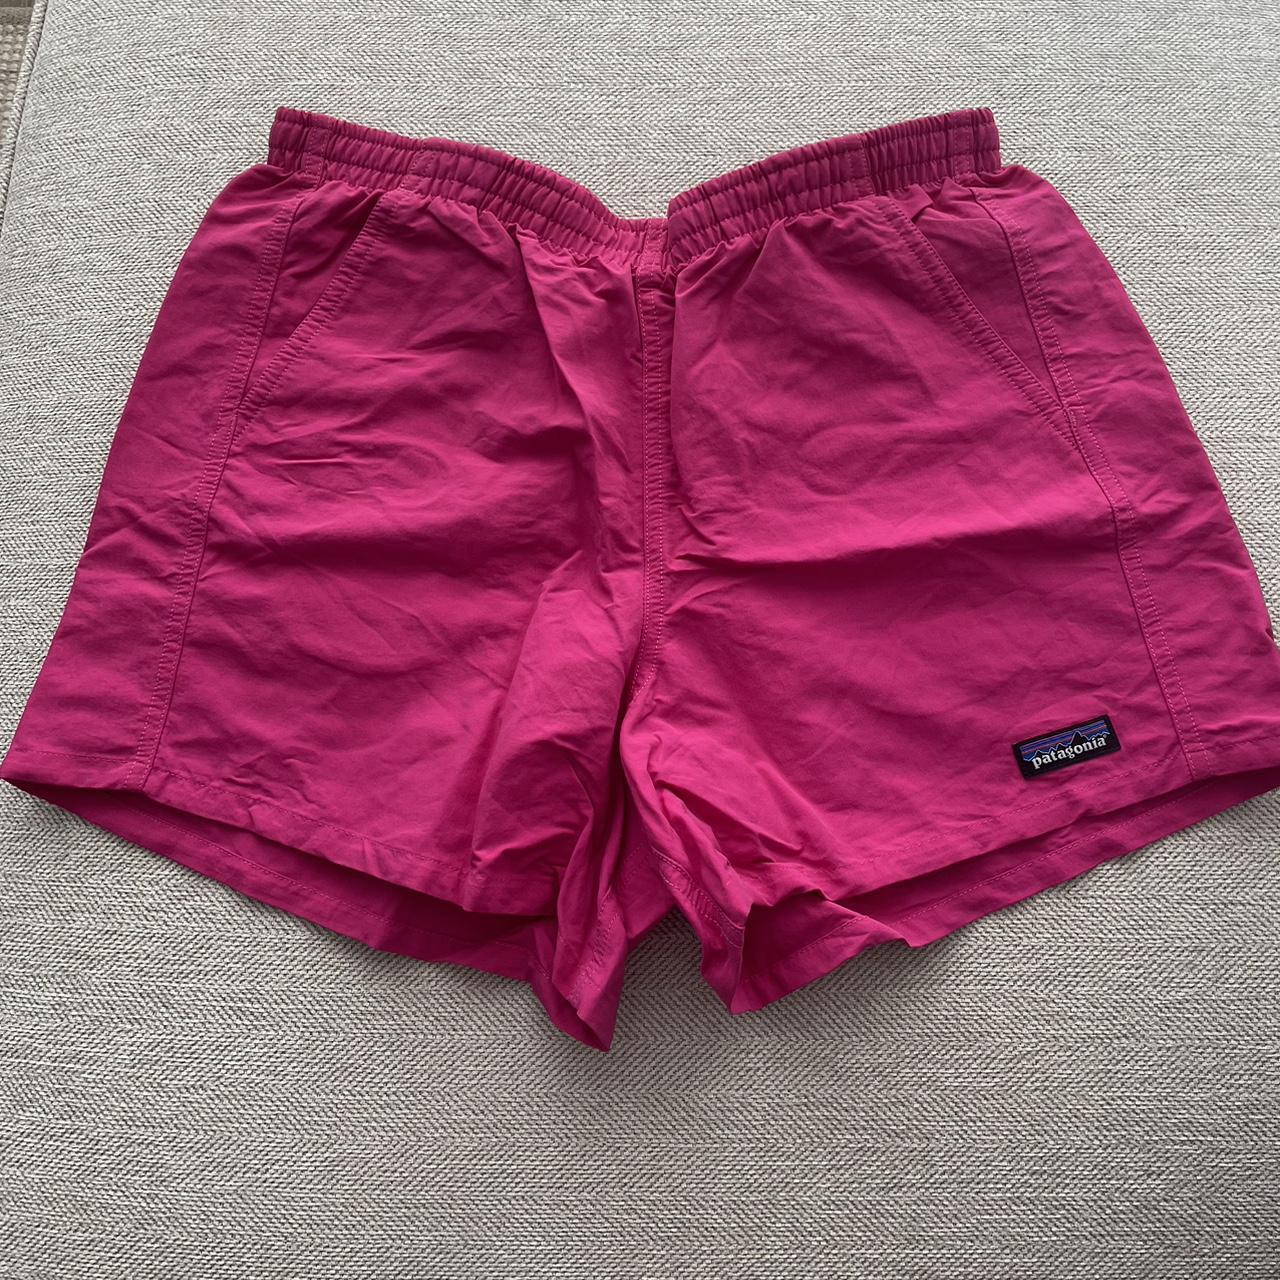 Medium Pink Patagonia Shorts 🩷🌎 - Depop